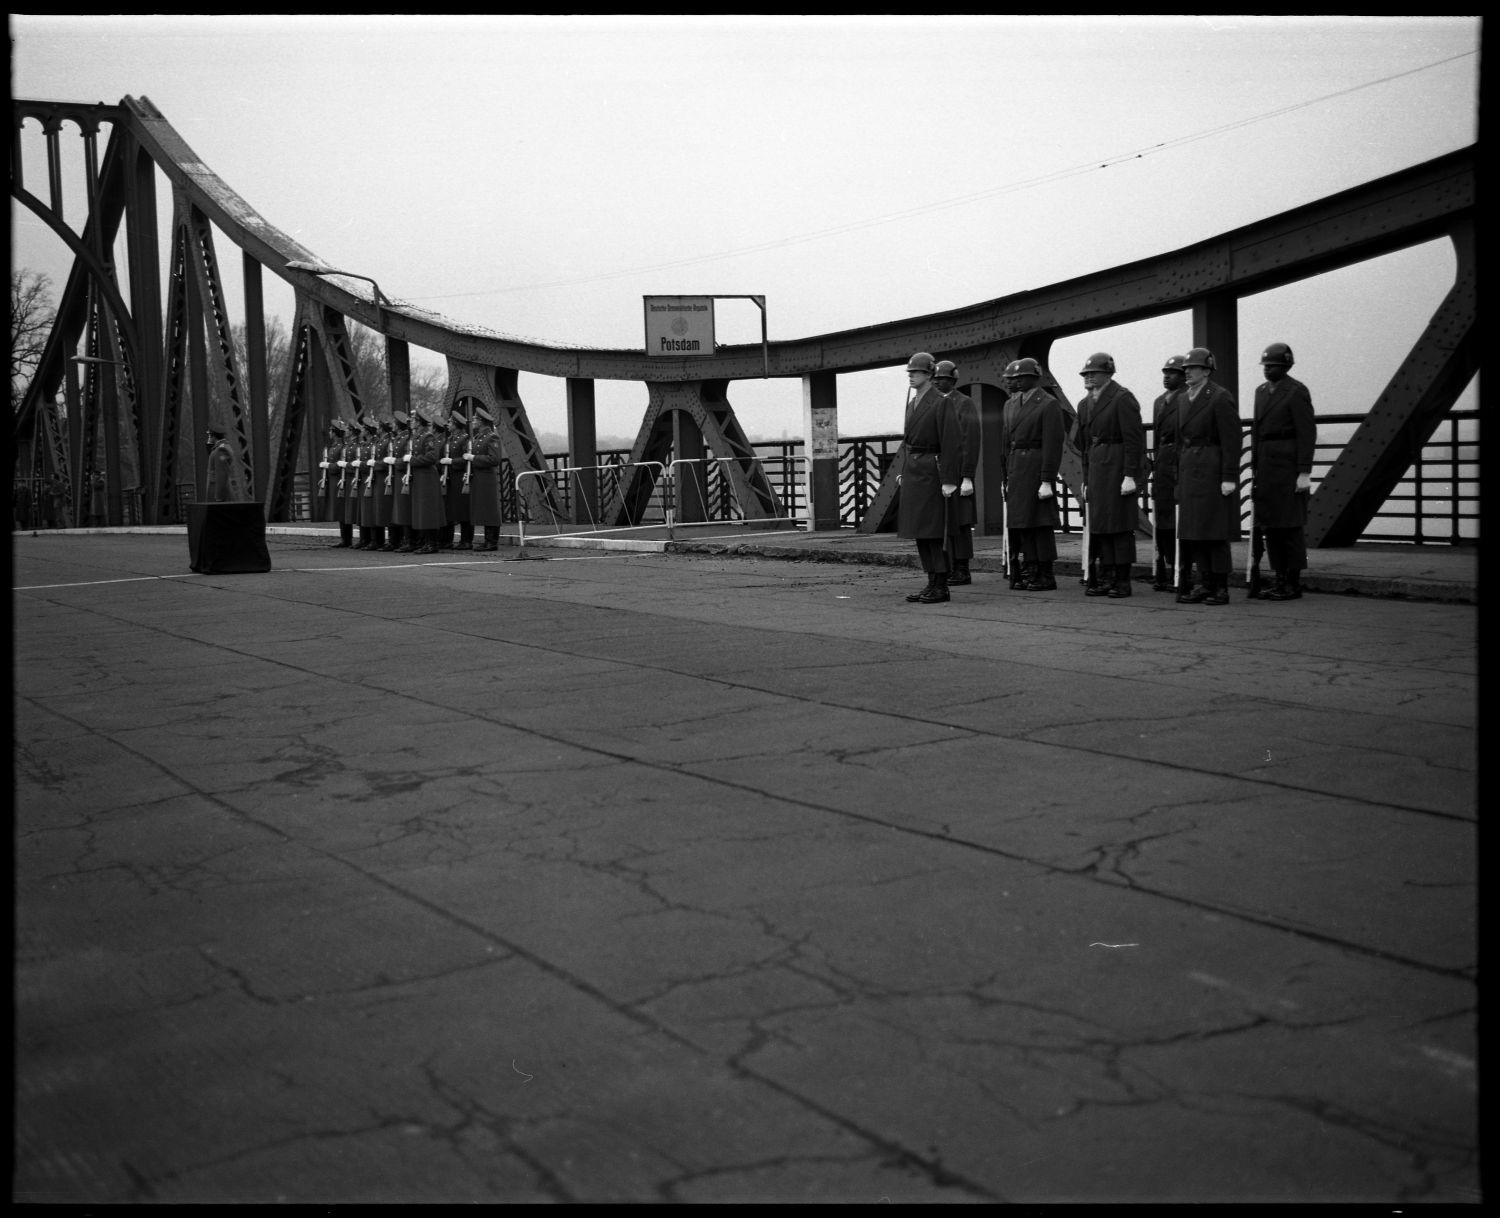 S/w-Fotografie: Überführung der sterblichen Überreste eines sowjetischen Soldaten über die Glienicker Brücke zwischen West-Berlin und Potsdam